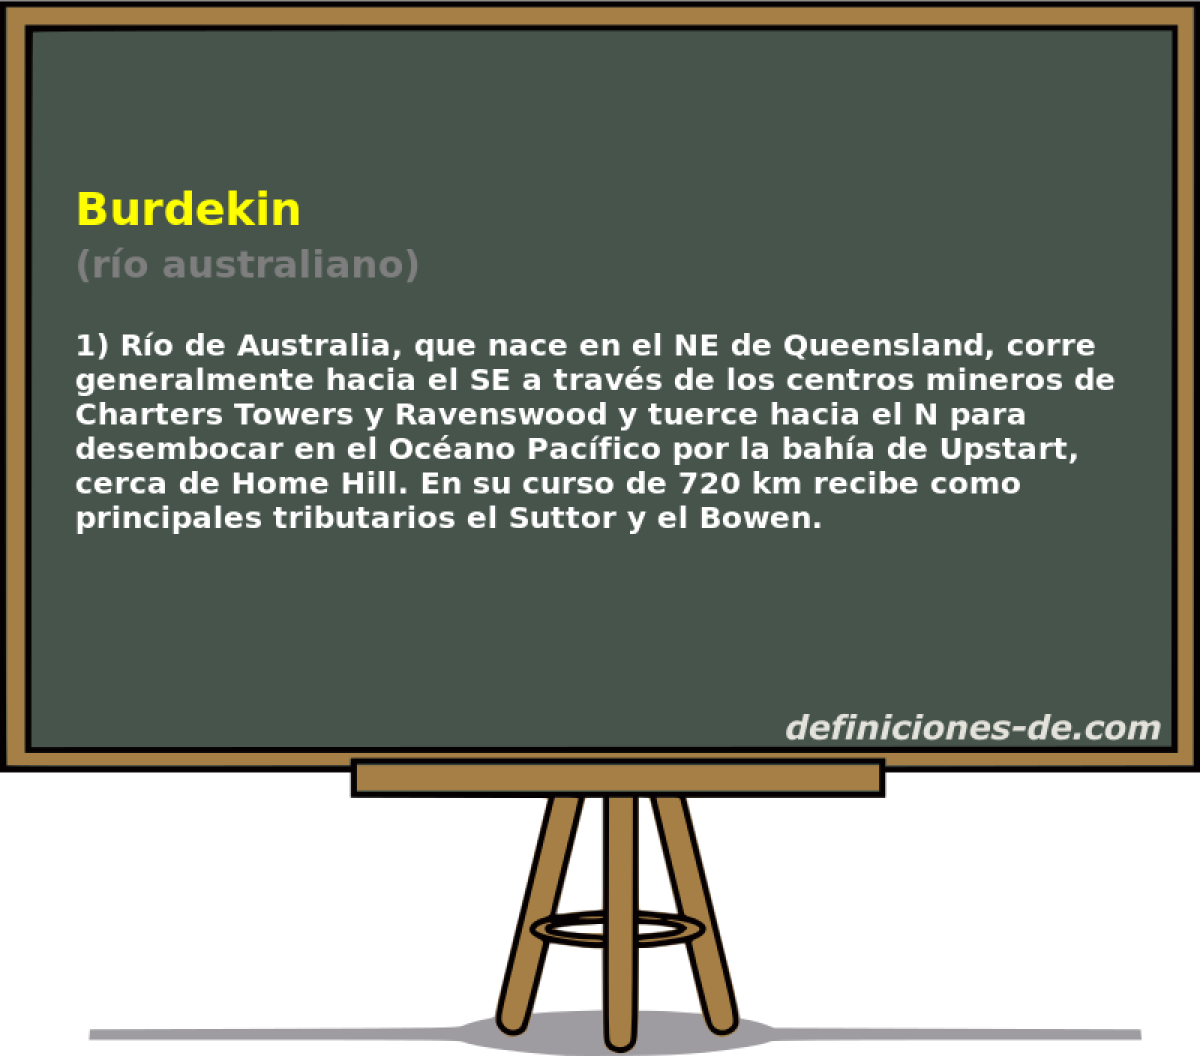 Burdekin (ro australiano)